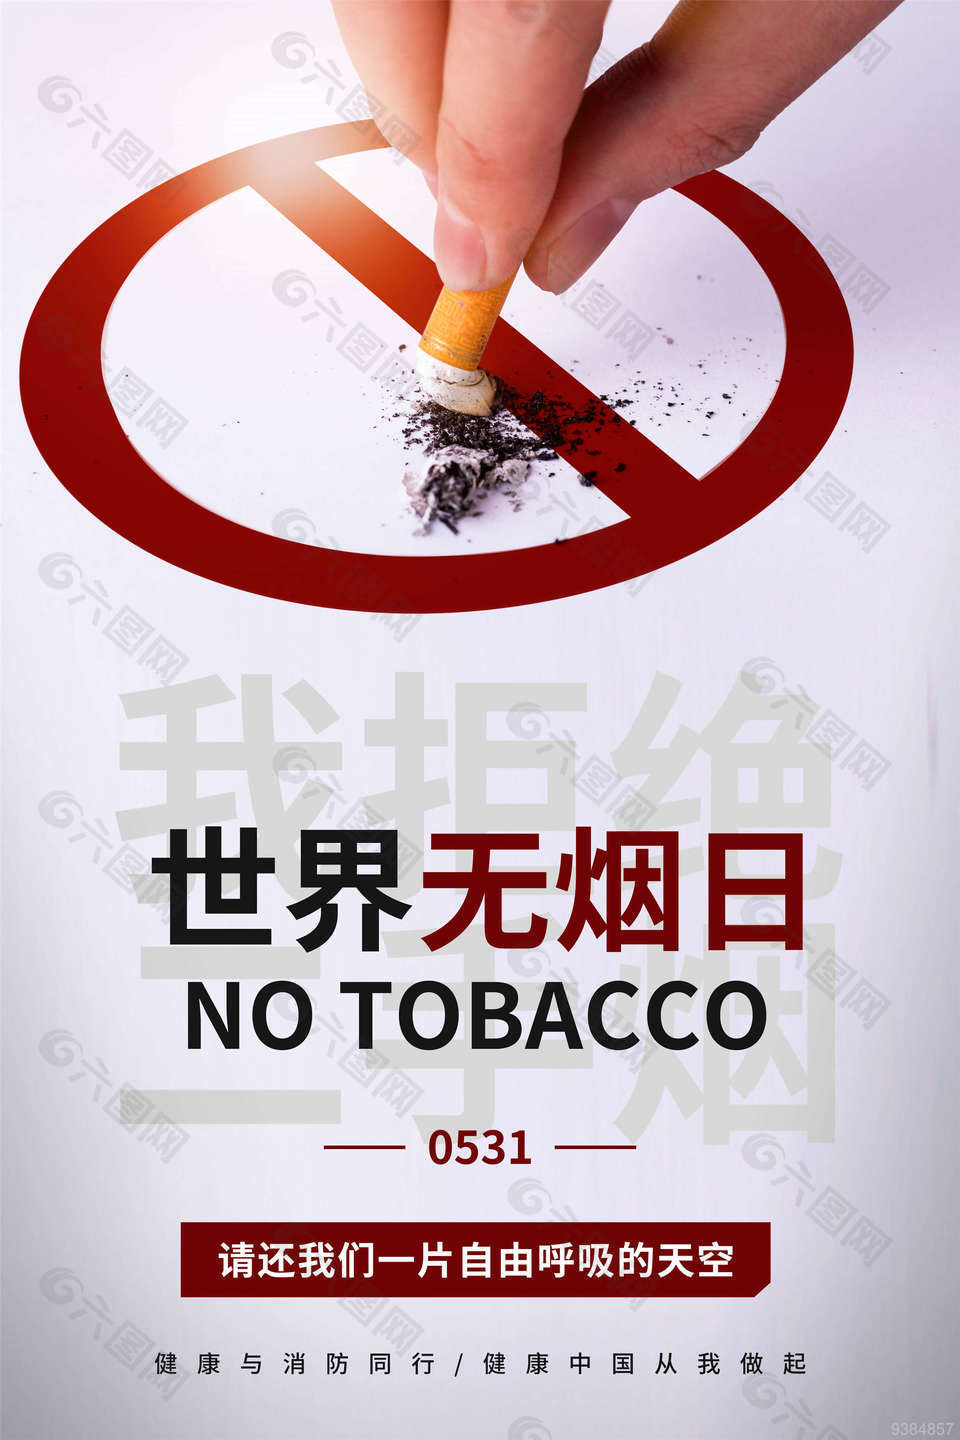 无烟日自由呼吸海报设计